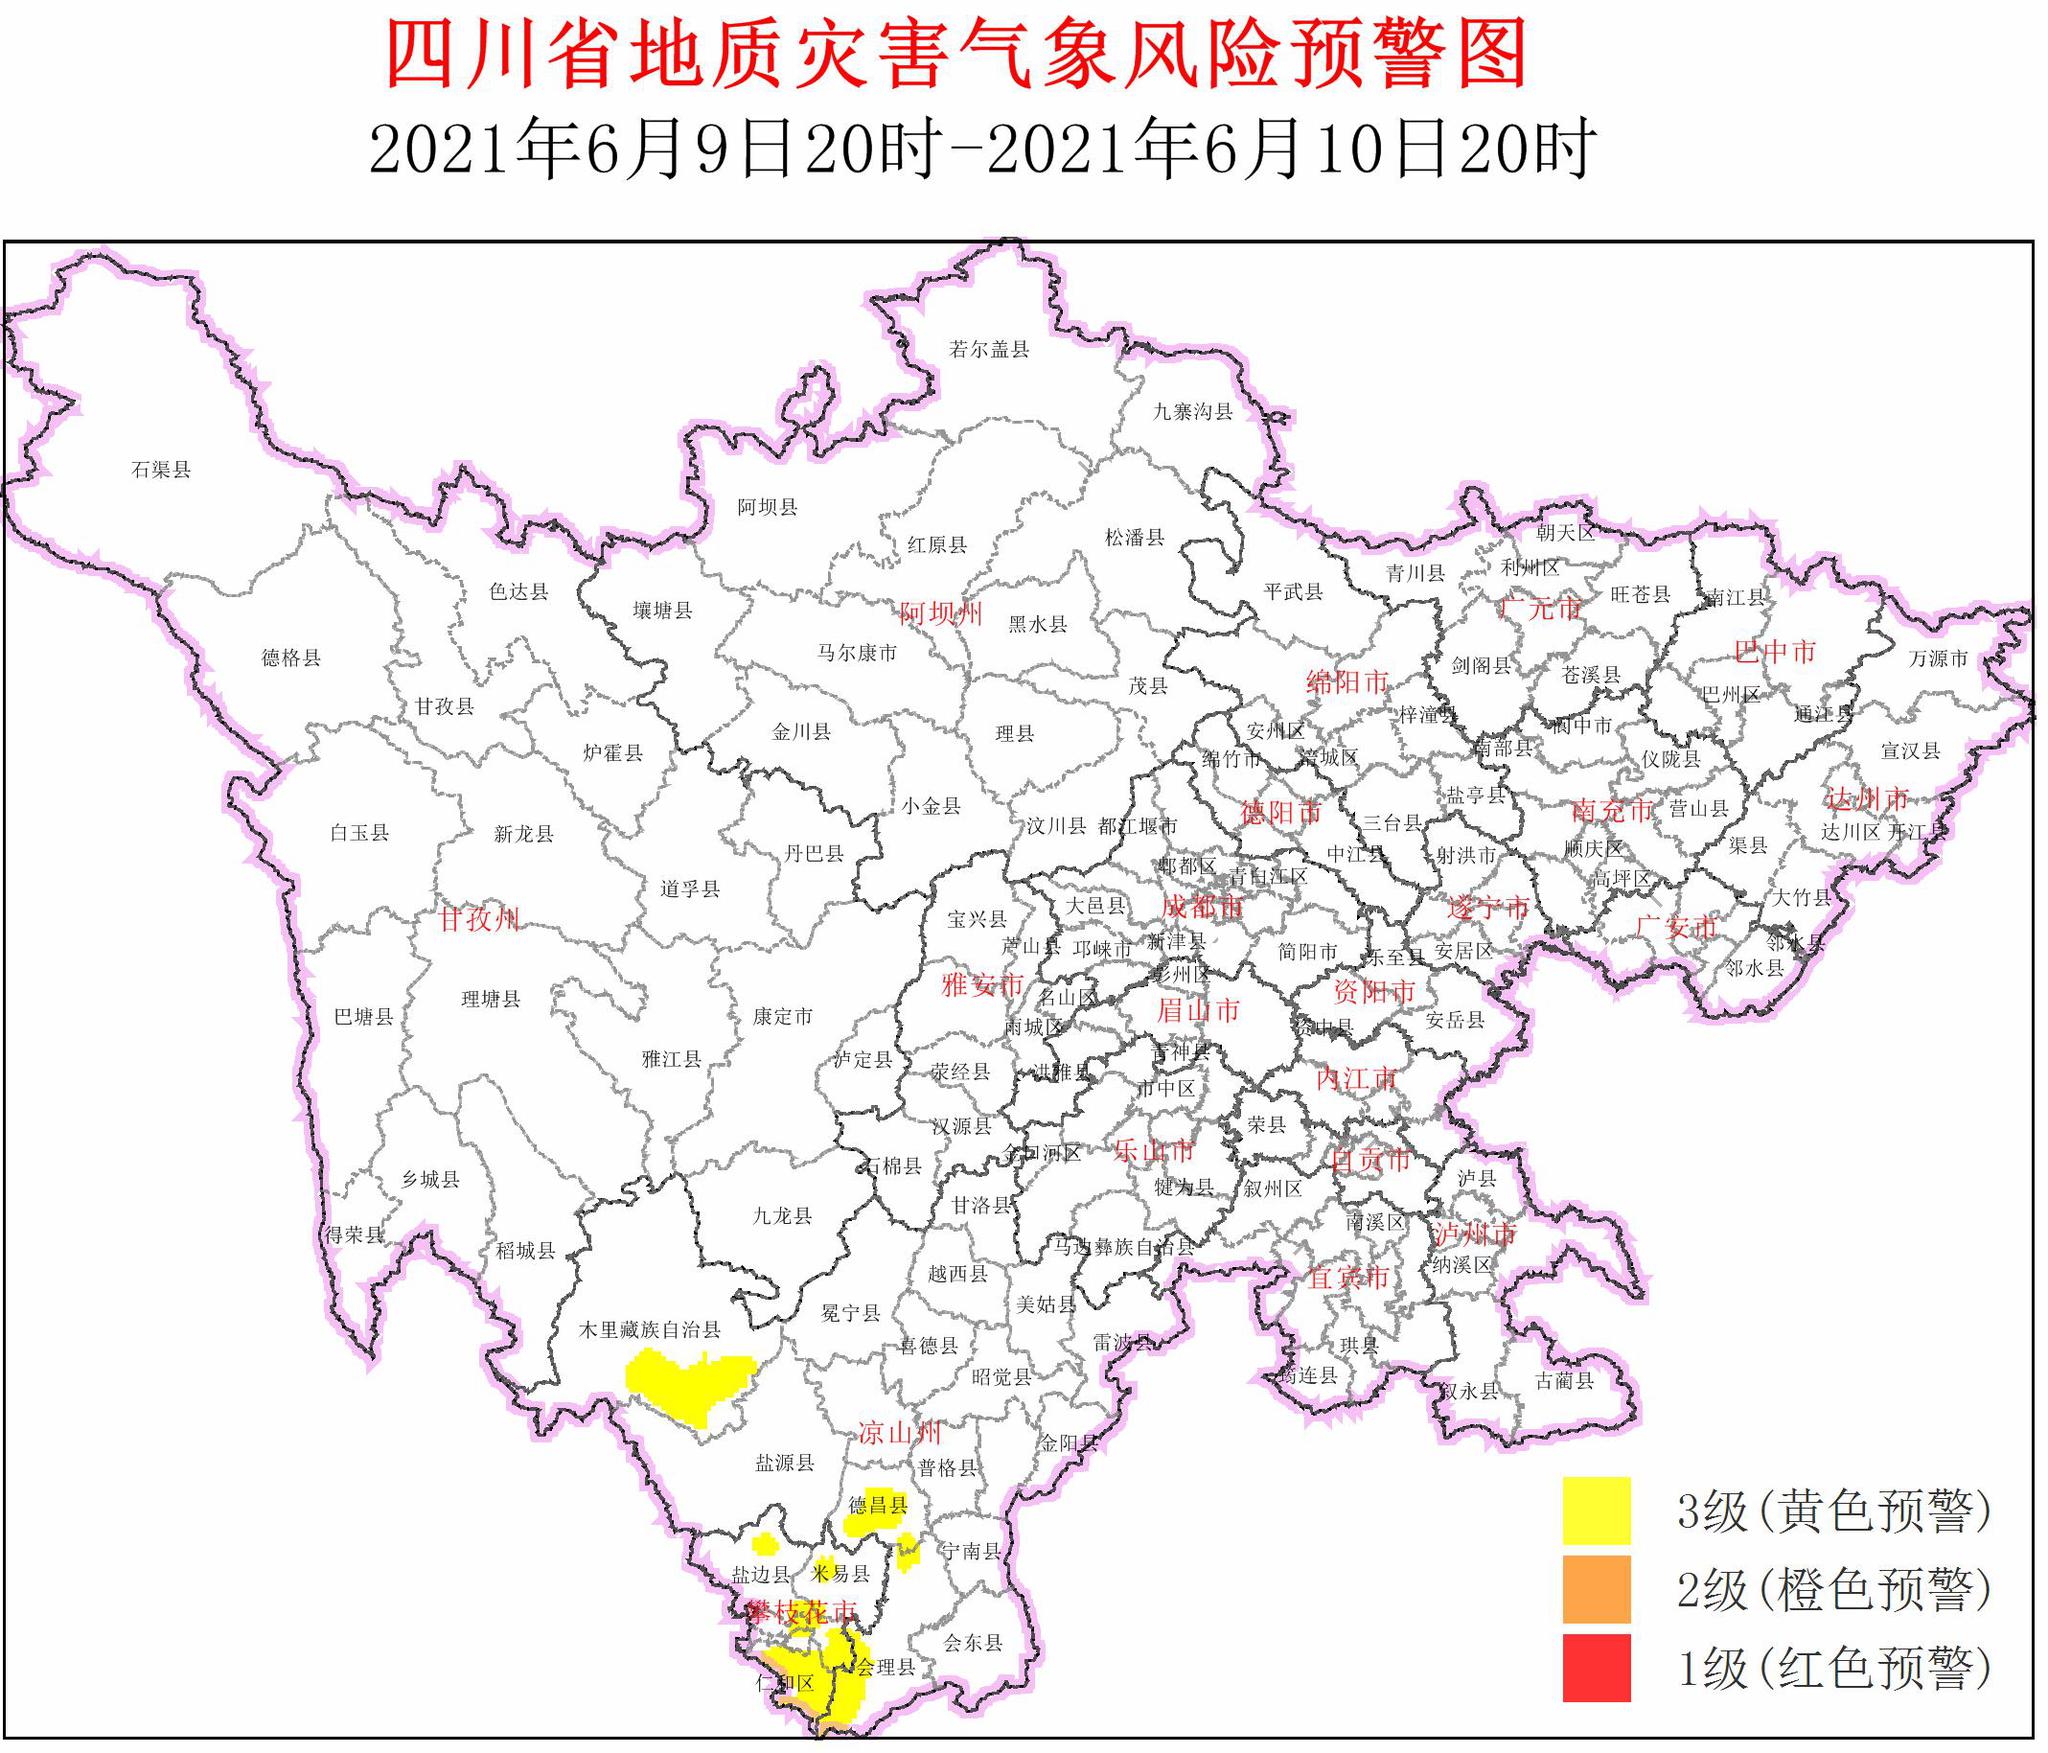 四川8县区有地质灾害气象风险3级黄色预警